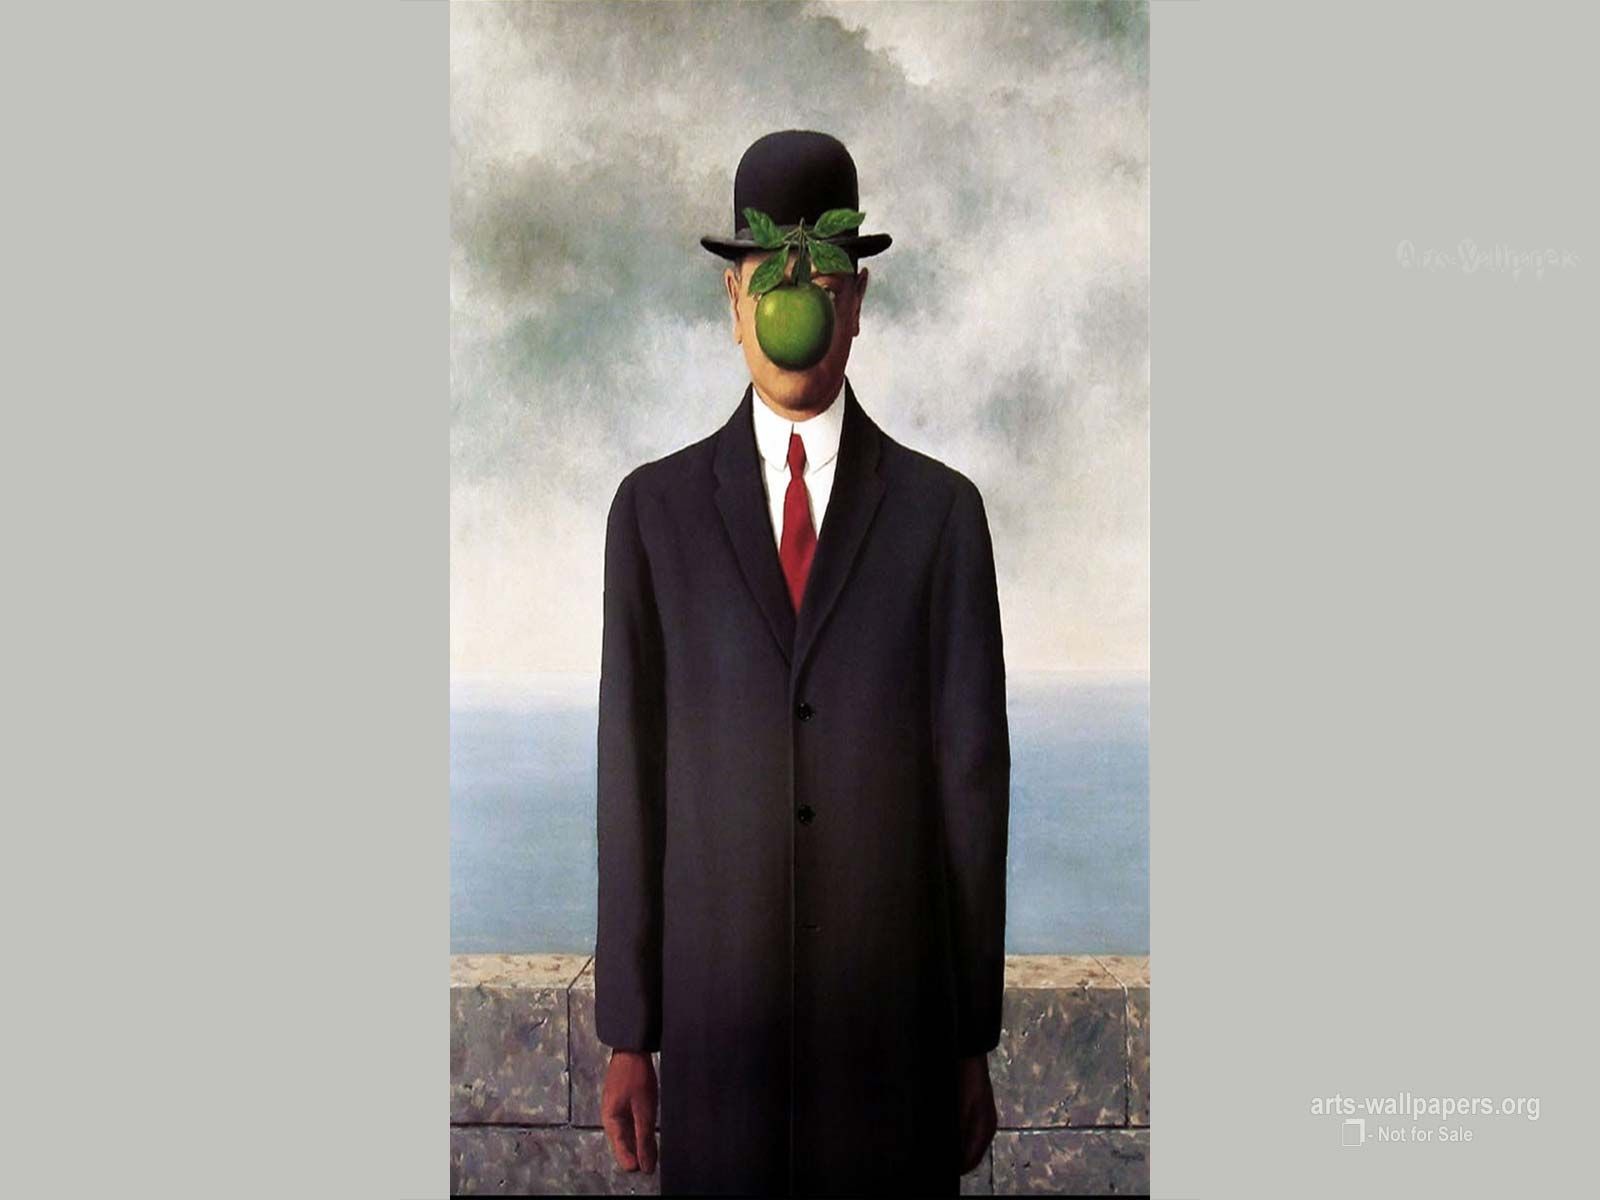 Rene Magritte Wallpaper, Paintings, Art Wallpaper, Desktop Art Background. Rene magritte, Magritte, Rene